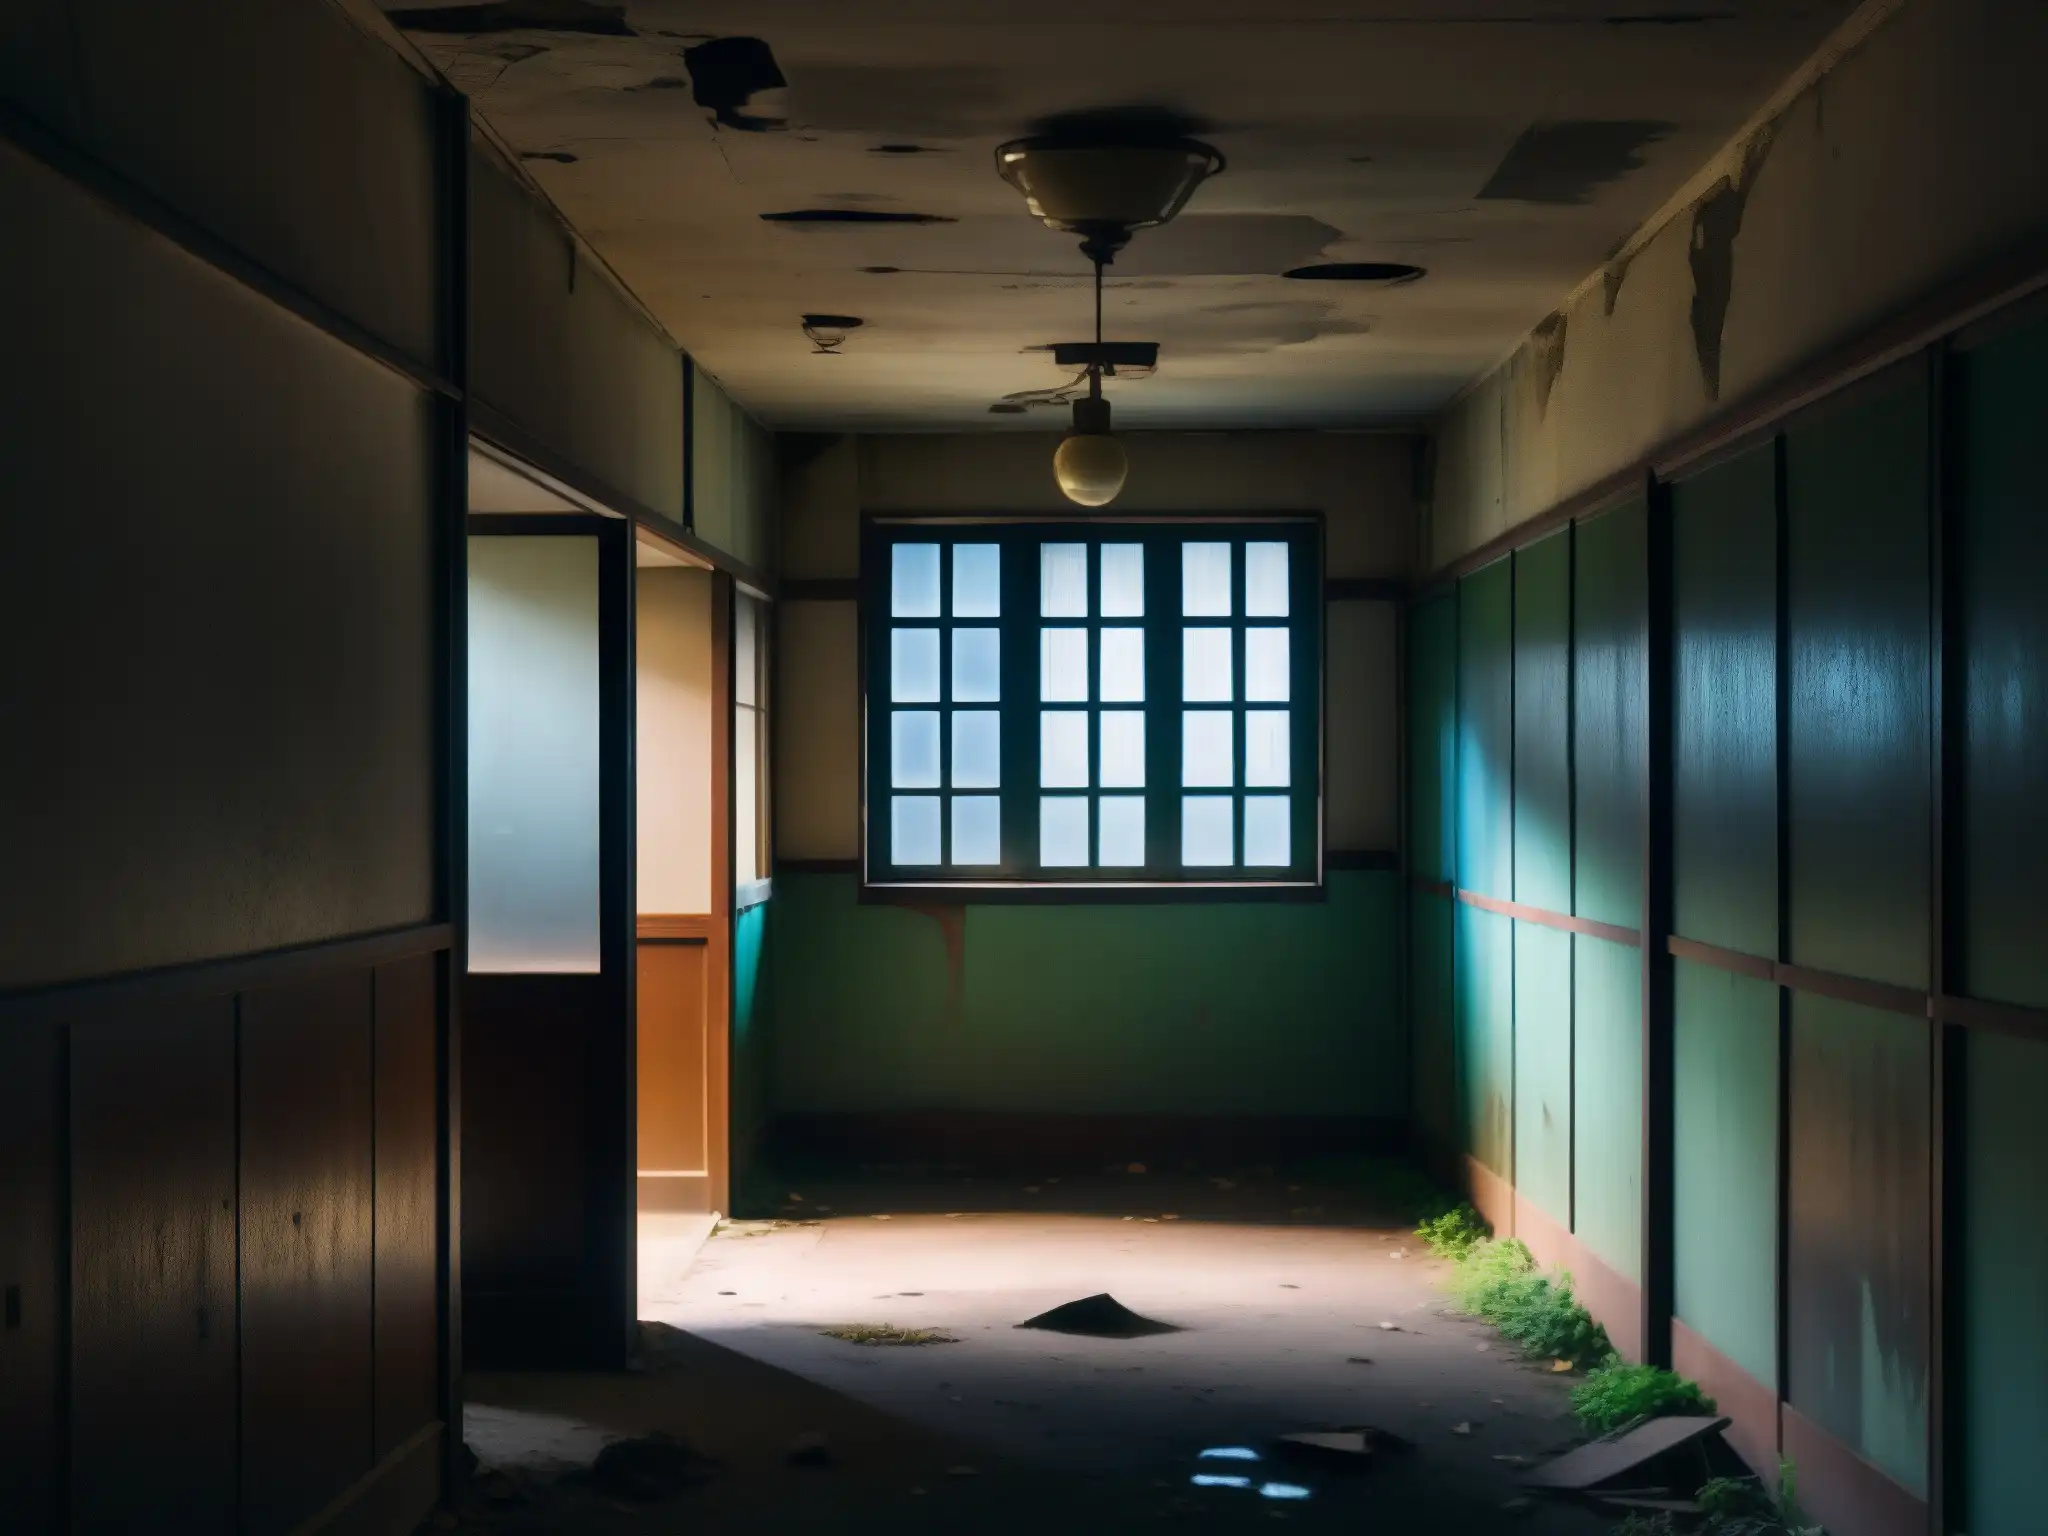 Un pasillo abandonado en un edificio coreano, con pintura descascarada y sombras inquietantes